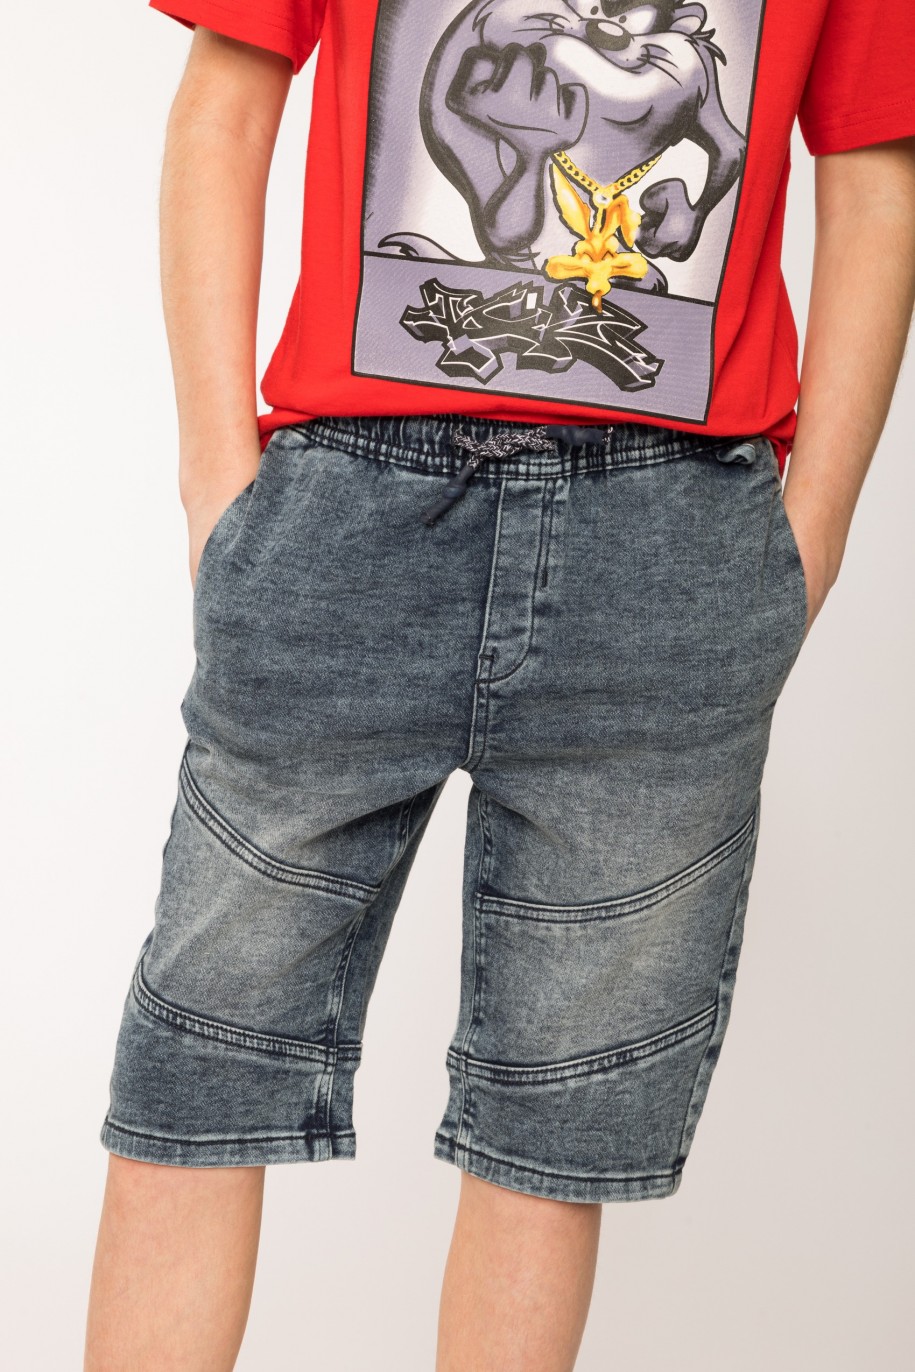 Jeansowe szorty dla chłopaka z ukośnymi przeszyciami na nogawkach - 27200